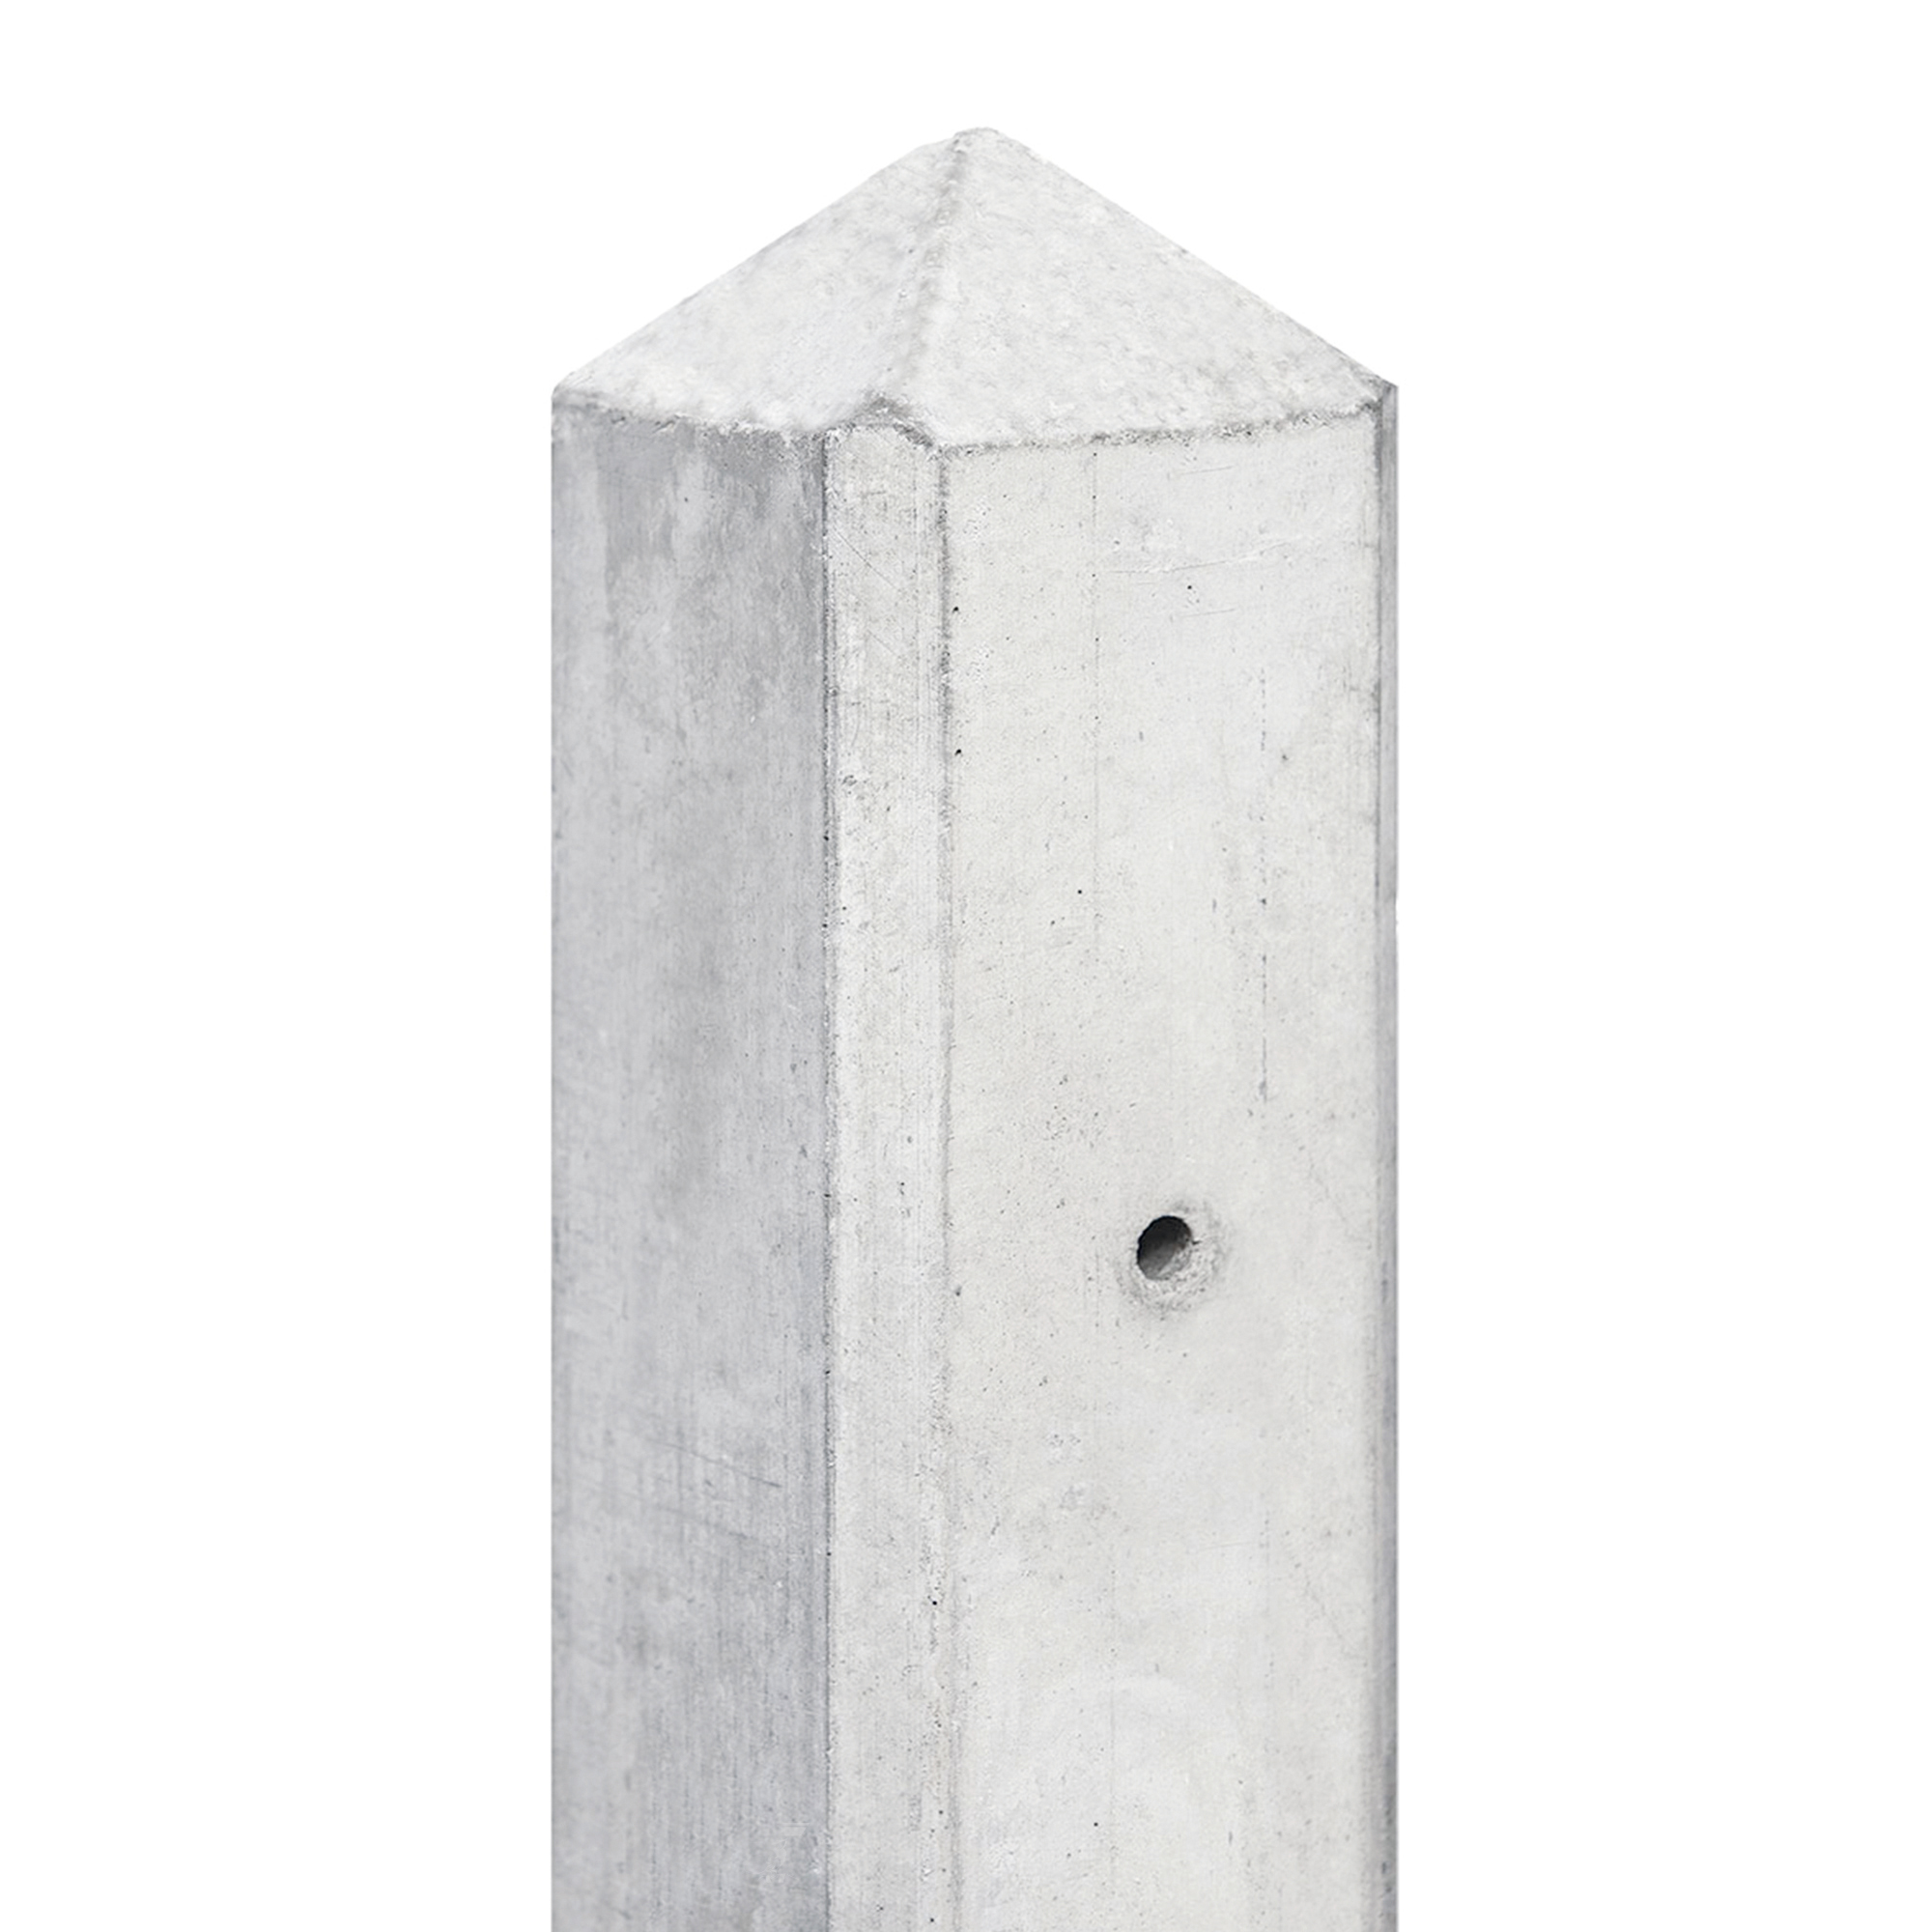 Hout-betonsysteem Amstel wit /grijs